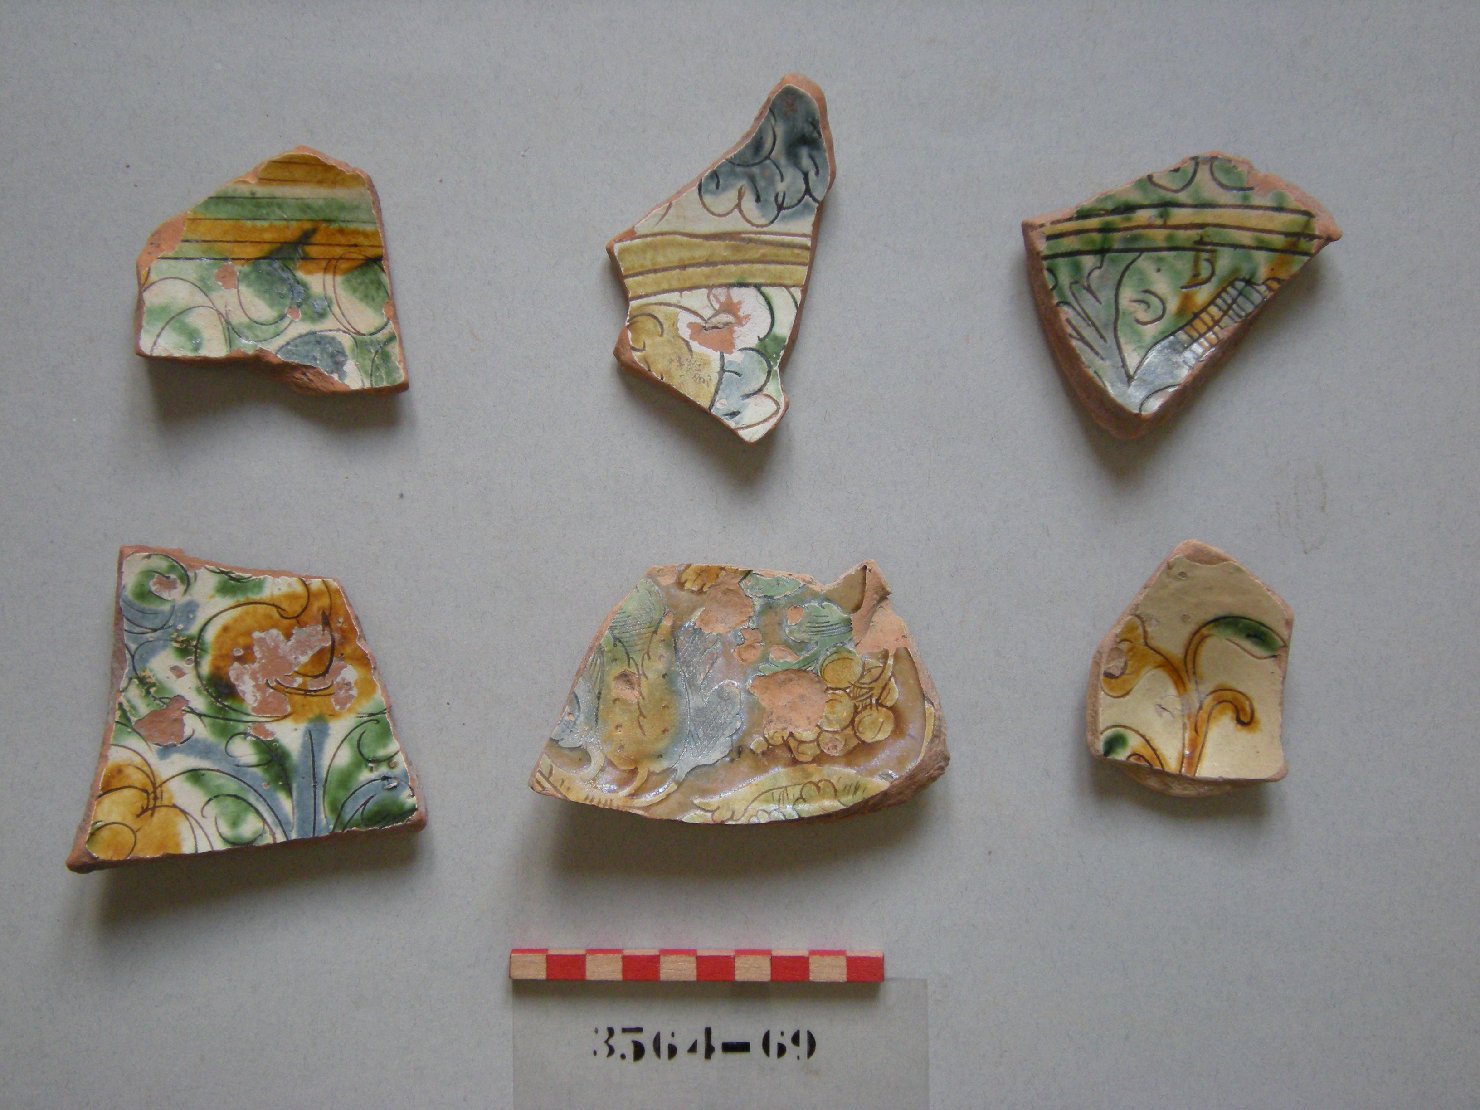 motivi decorativi vegetali (scodella, frammento) - ambito veneziano (secc. XVI/ XVII)